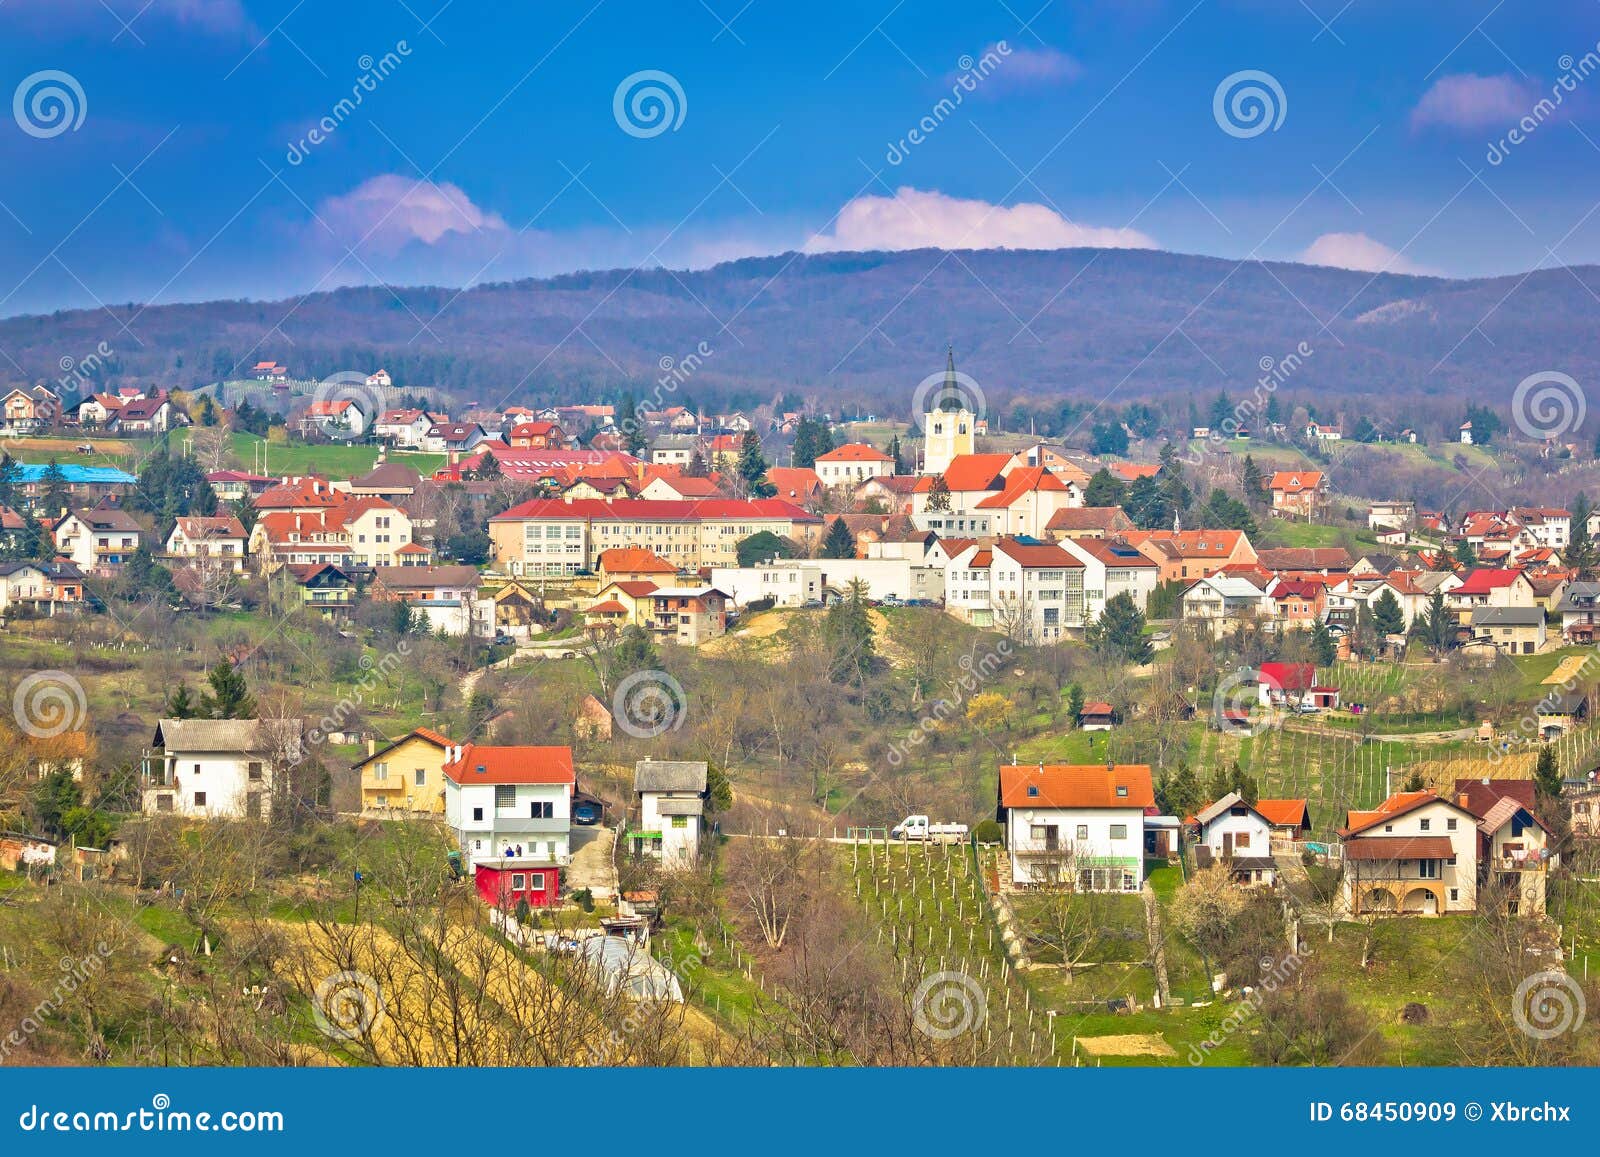 town of sveti ivan zelina